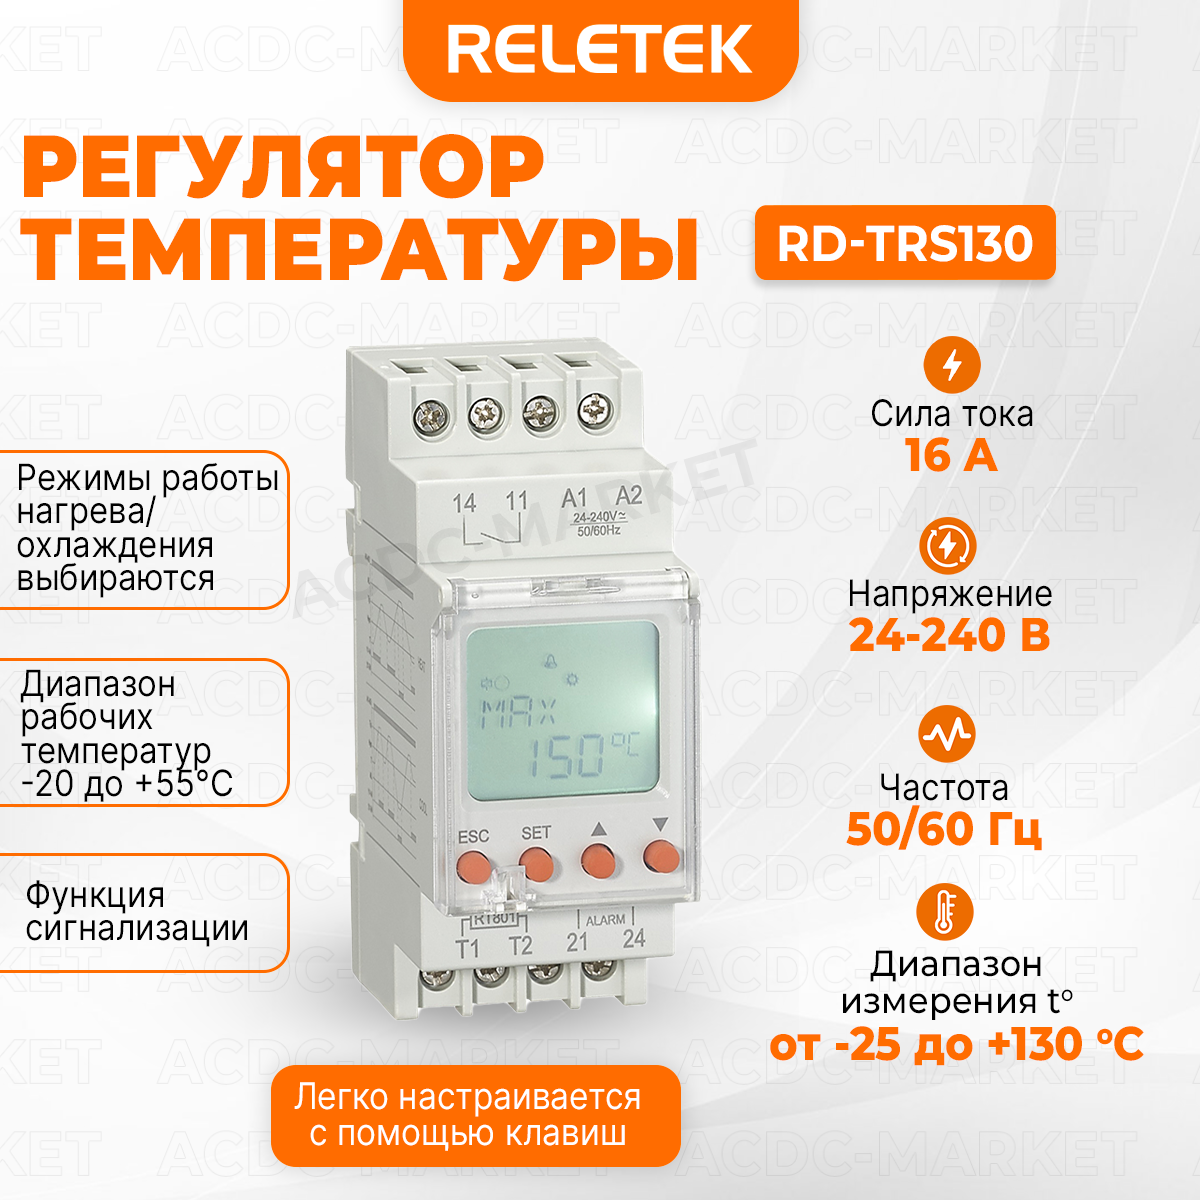 Регулятор температуры RD-RTS130 RELETEK, цифровой, в комплекте с термодатчиком.